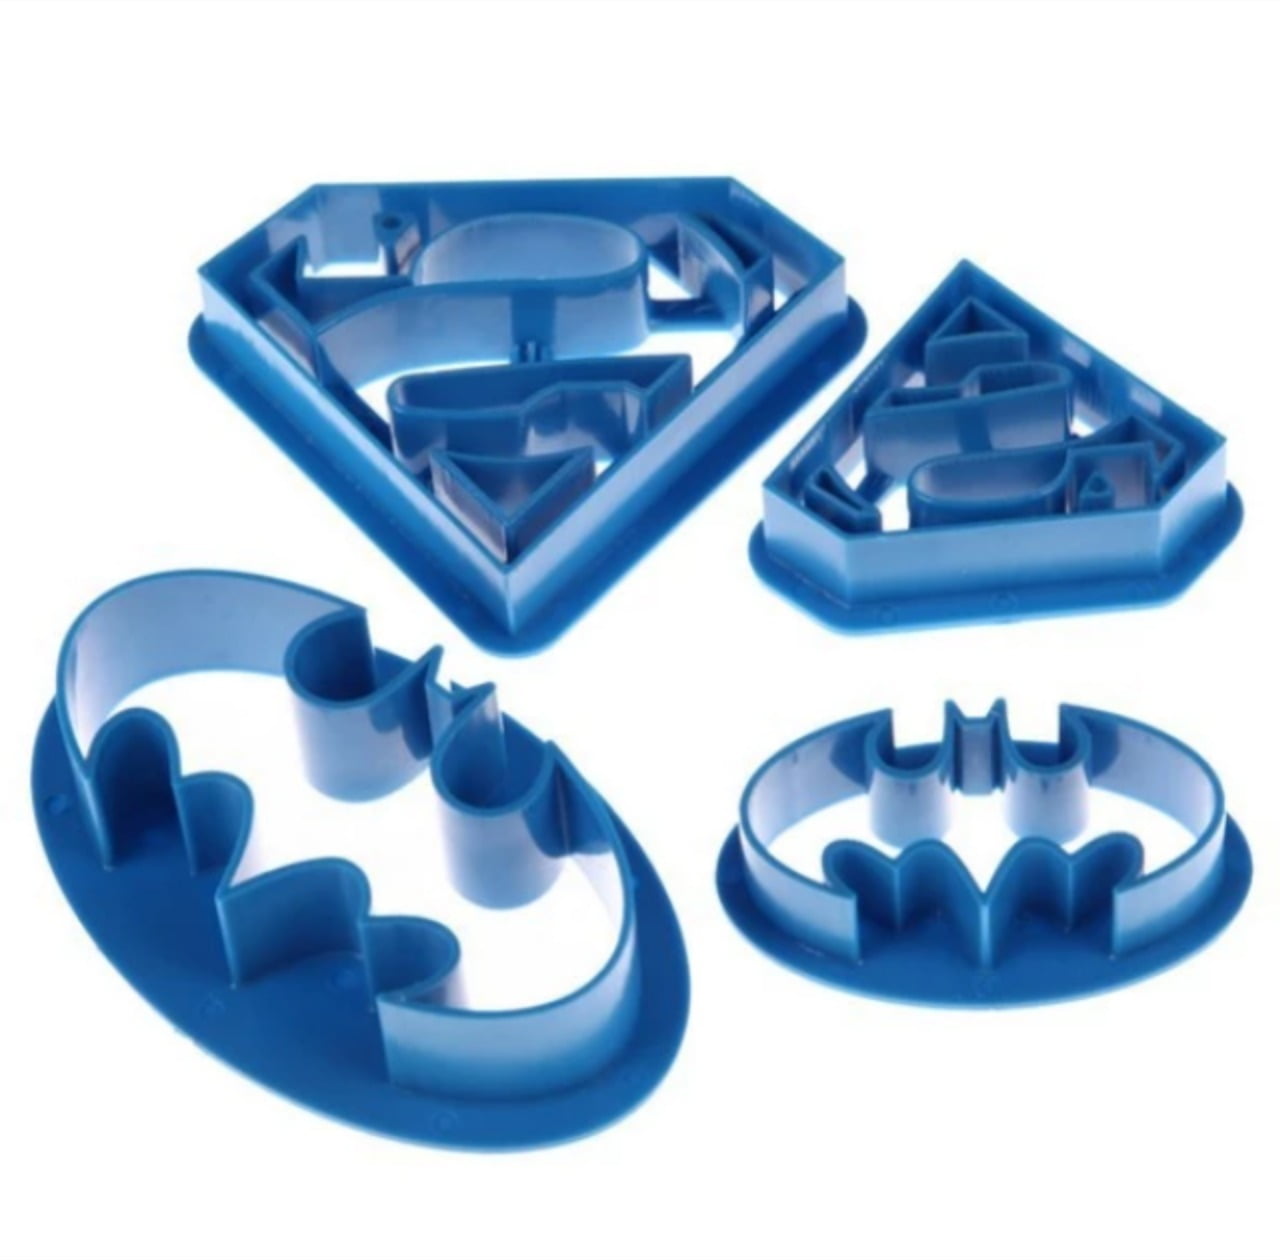 Conjunto de Cortadores com símbolos do Batman e Super Homem Super herói em dois tamanhos